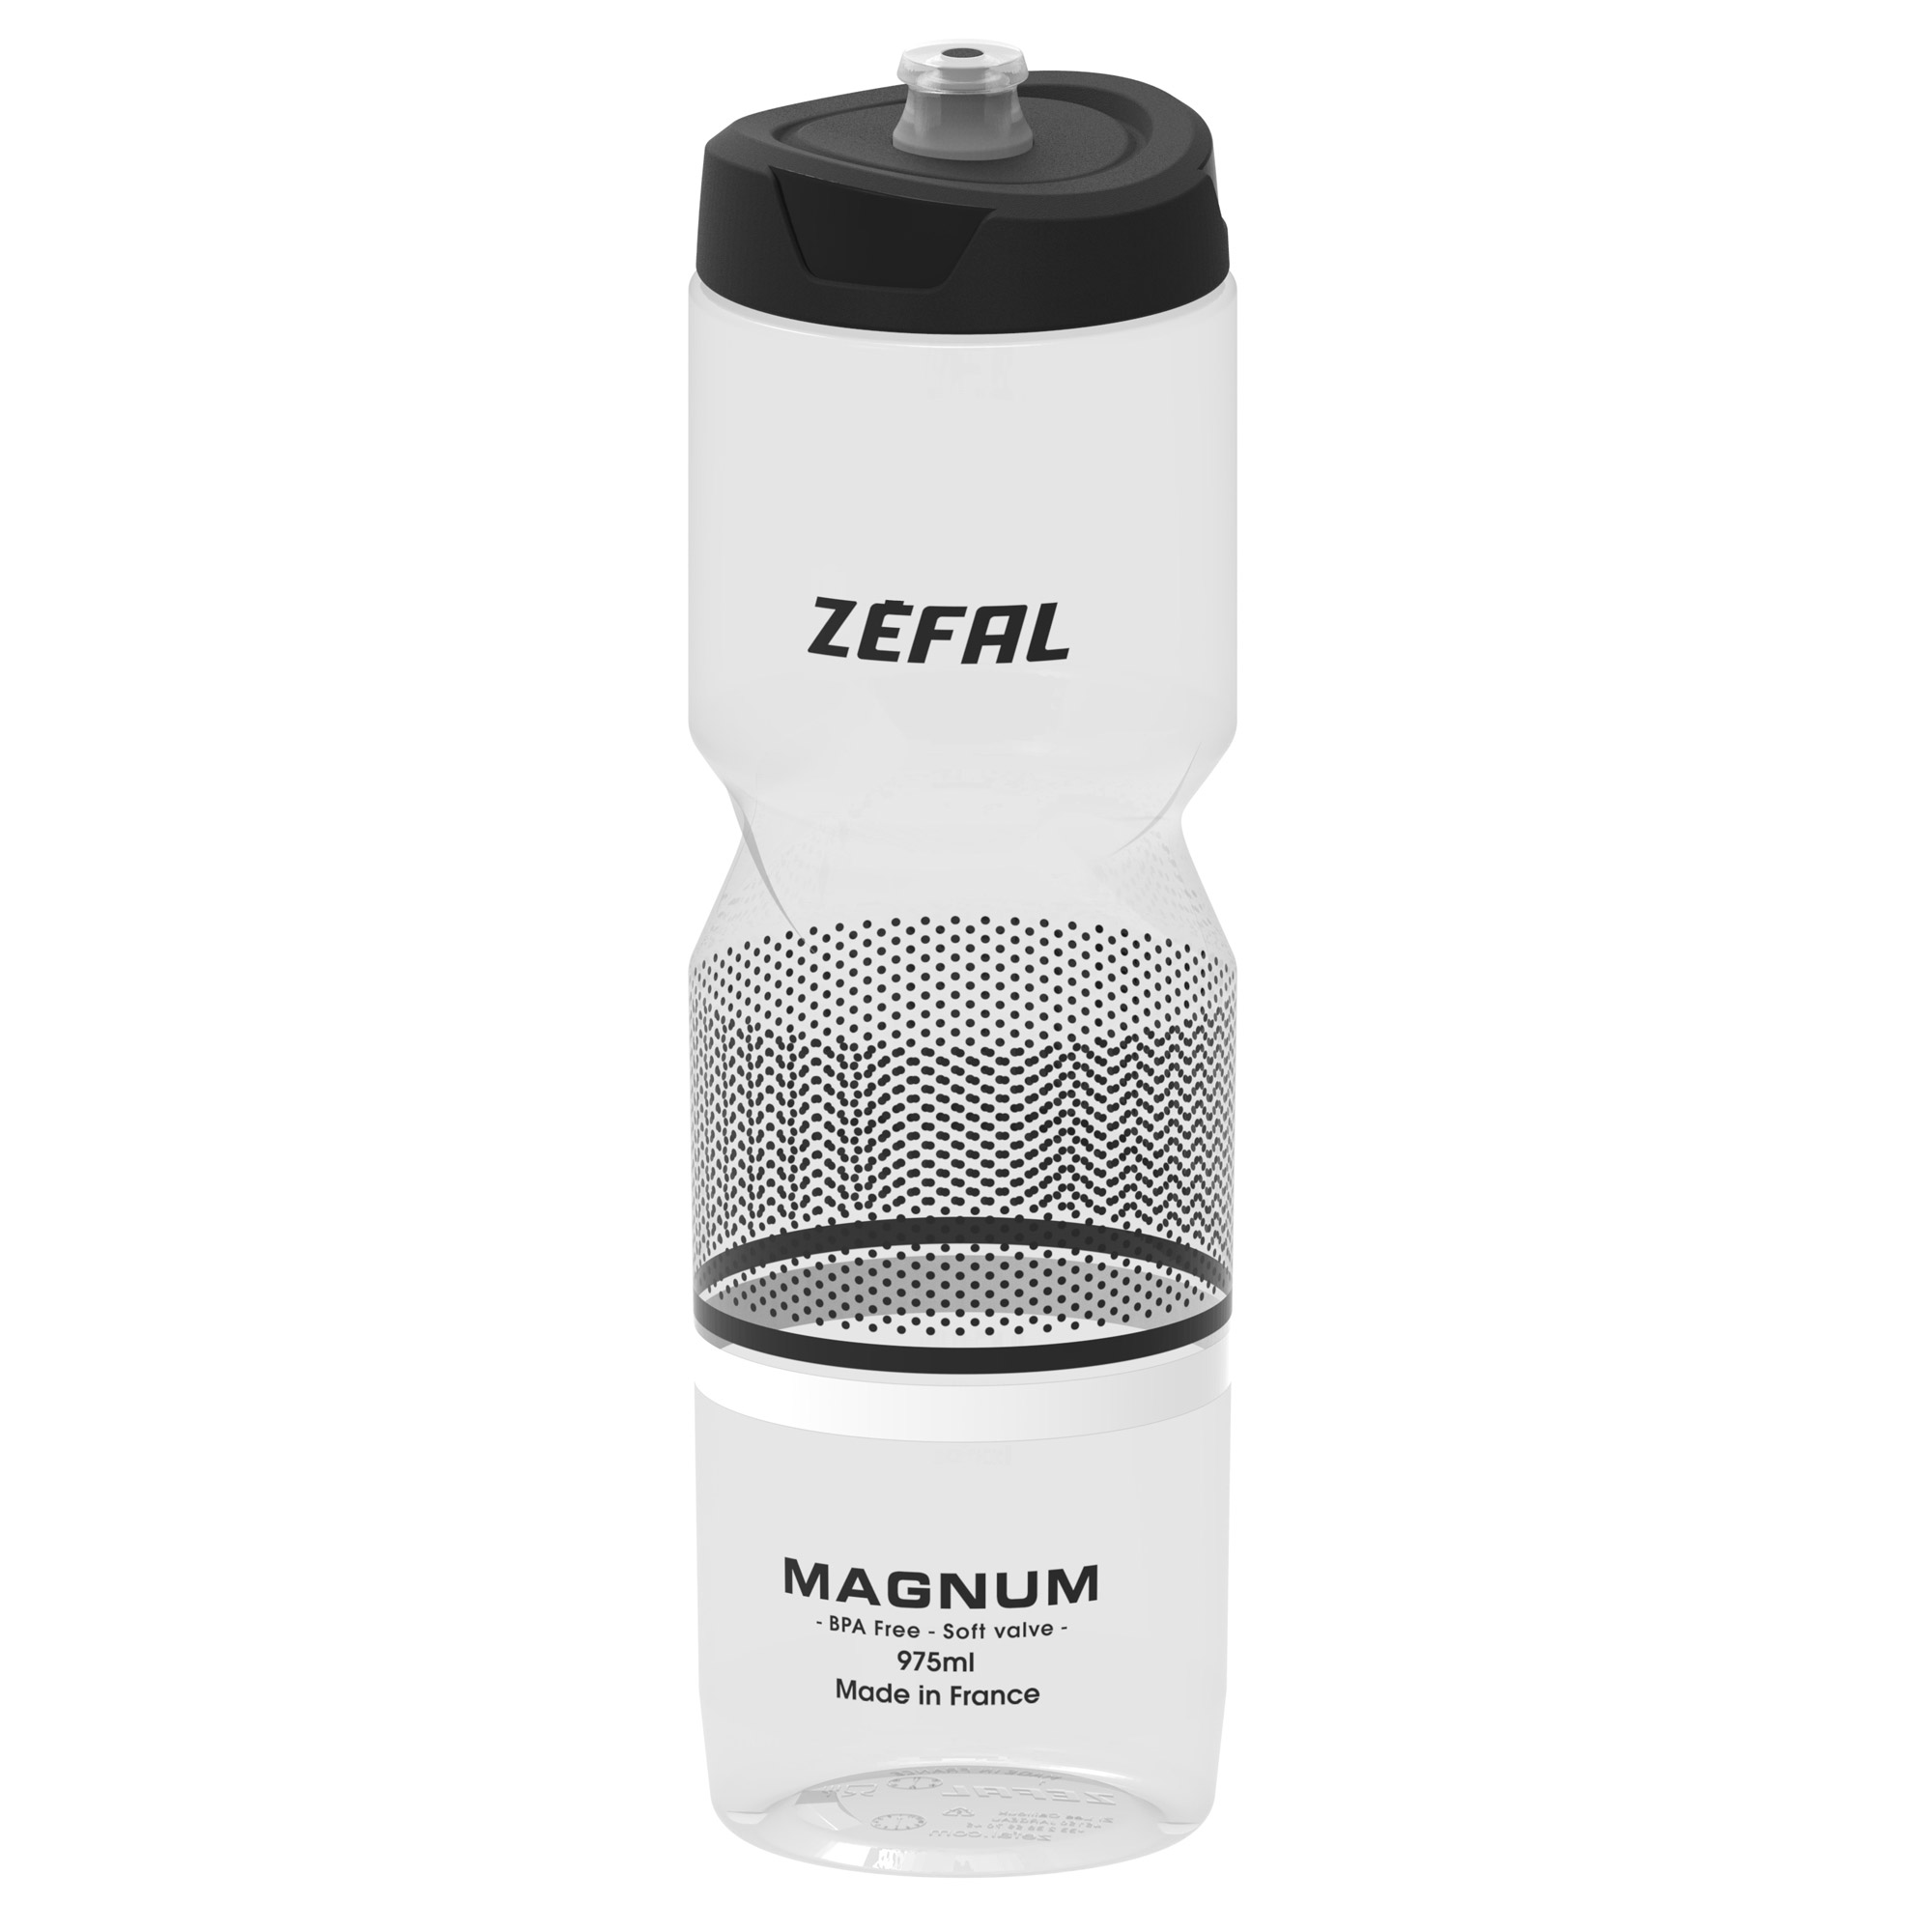 Zefal Magnum Bottle 975 ml